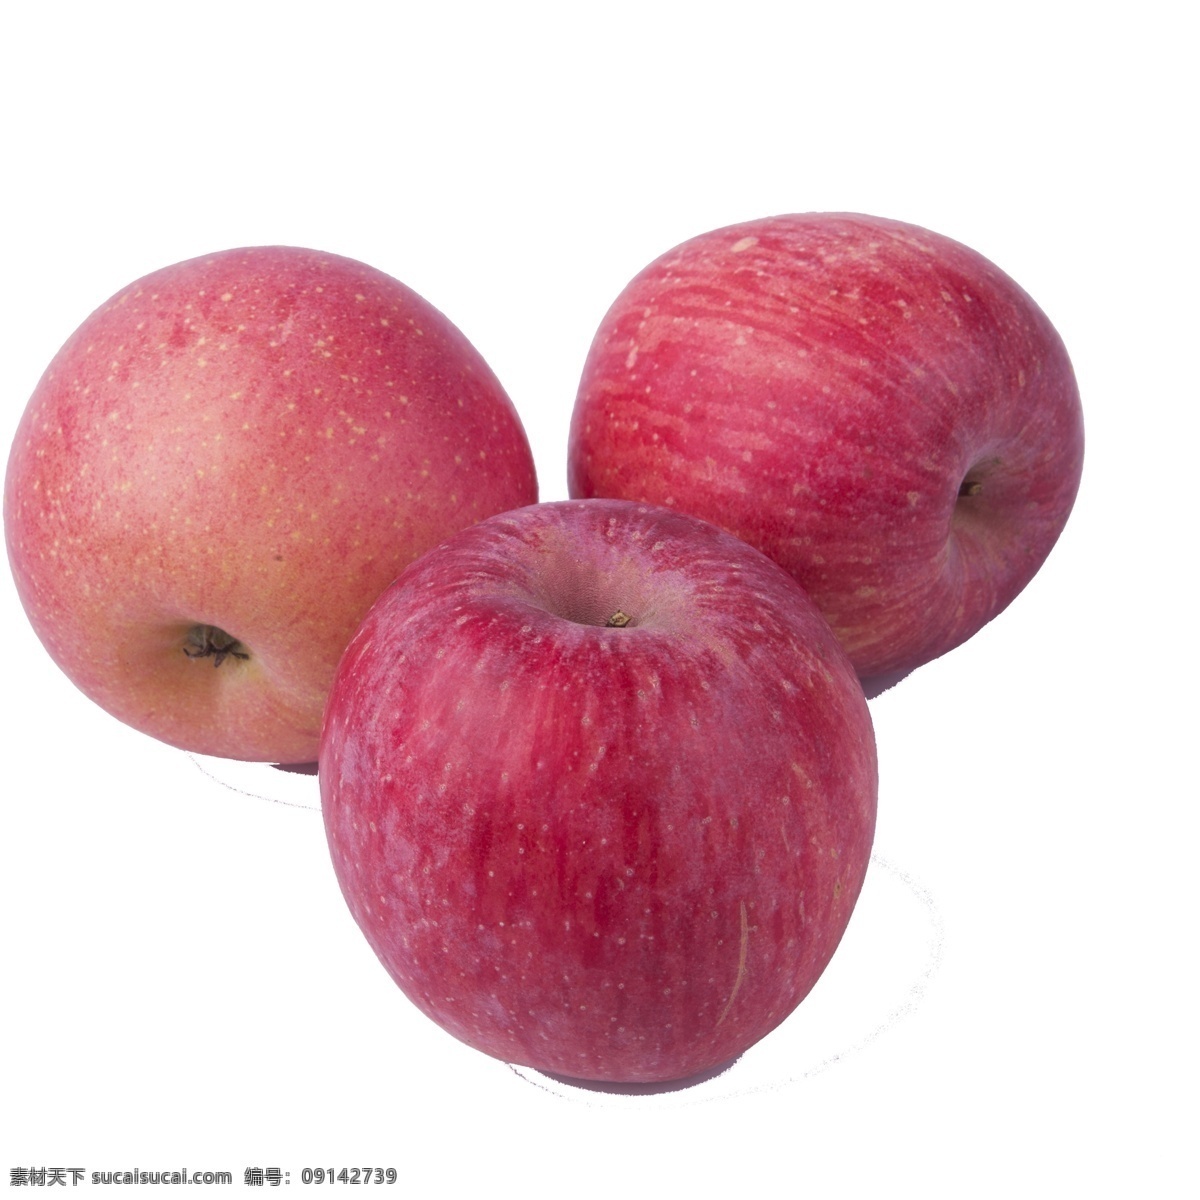 红色 苹果 免 抠 图 三个红苹果 红通通 美味的苹果 生态水果 植物果实 果实 红色的苹果 免抠图